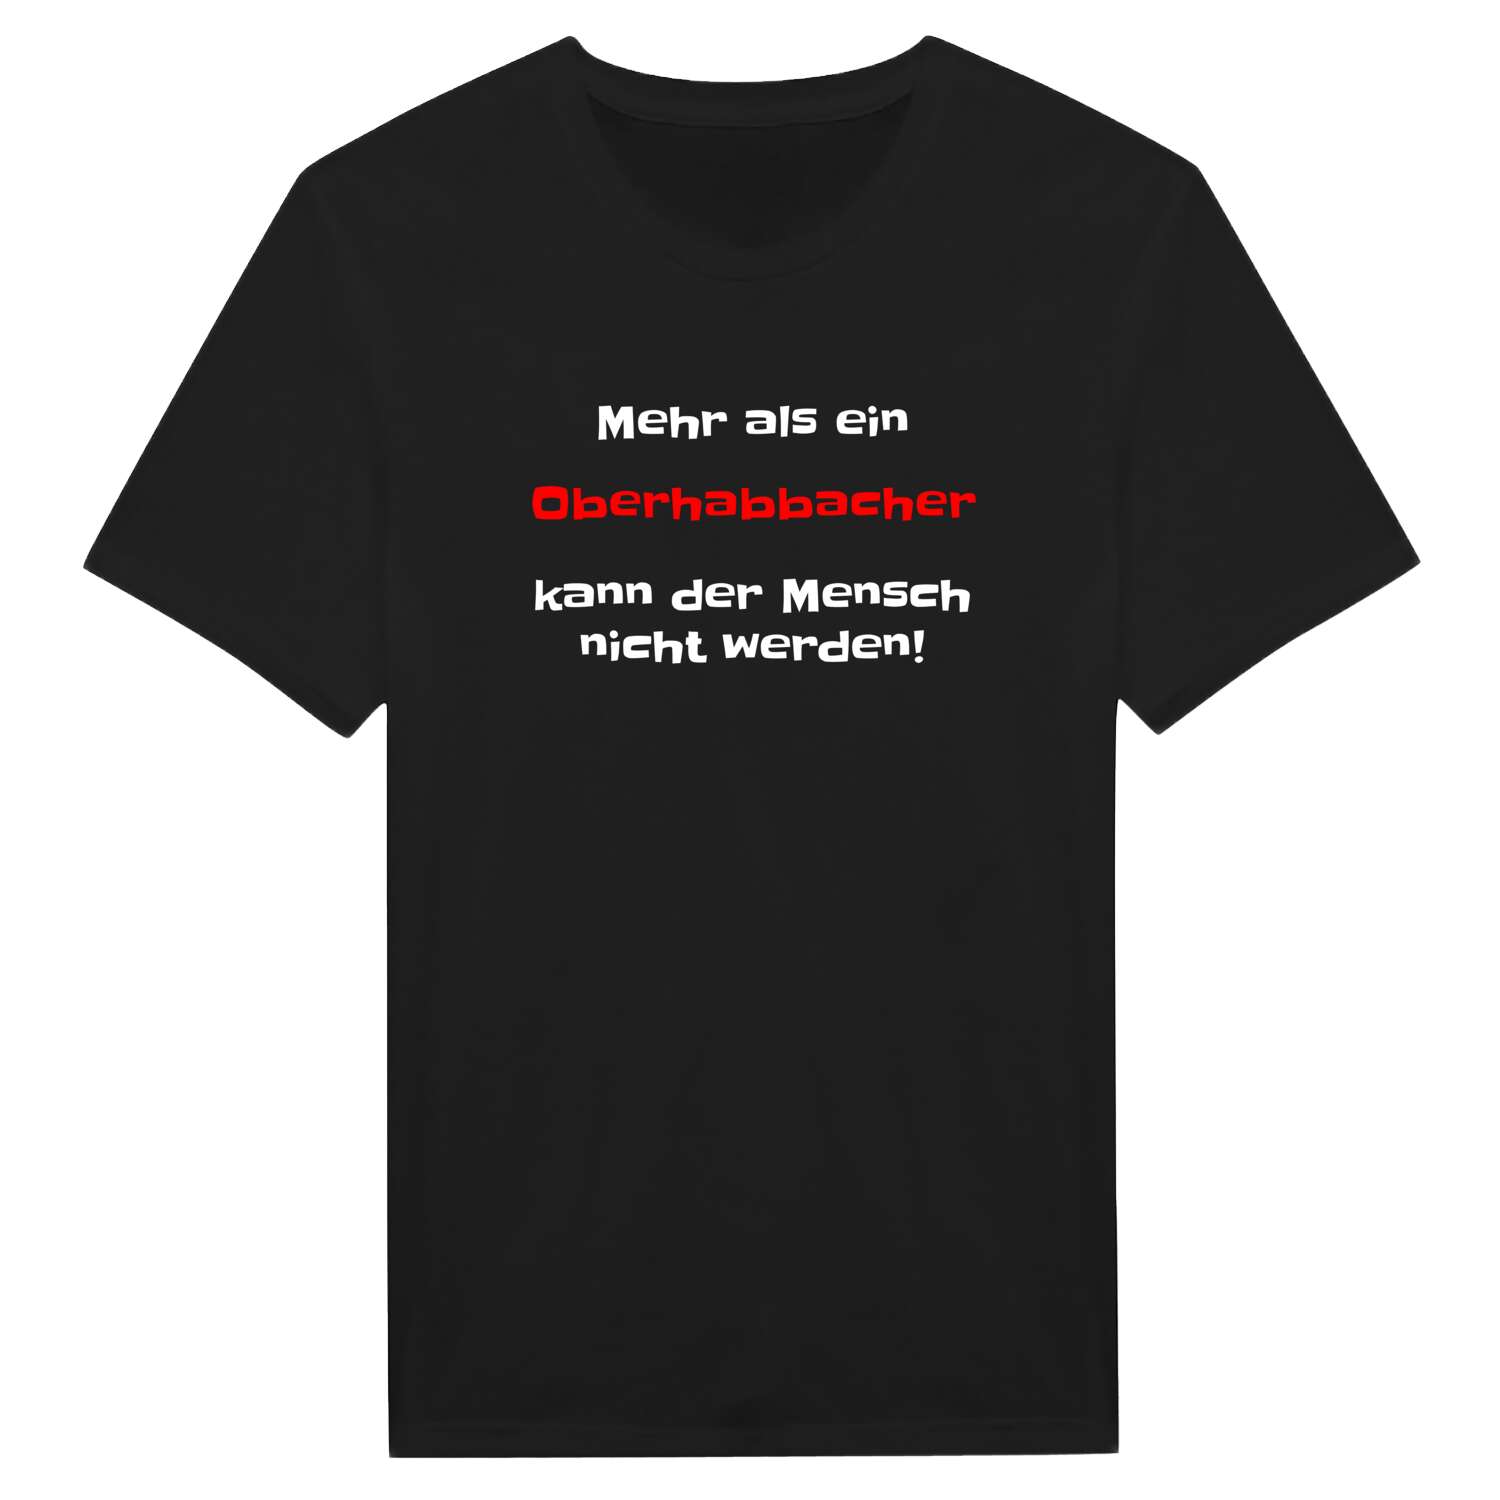 Oberhabbach T-Shirt »Mehr als ein«